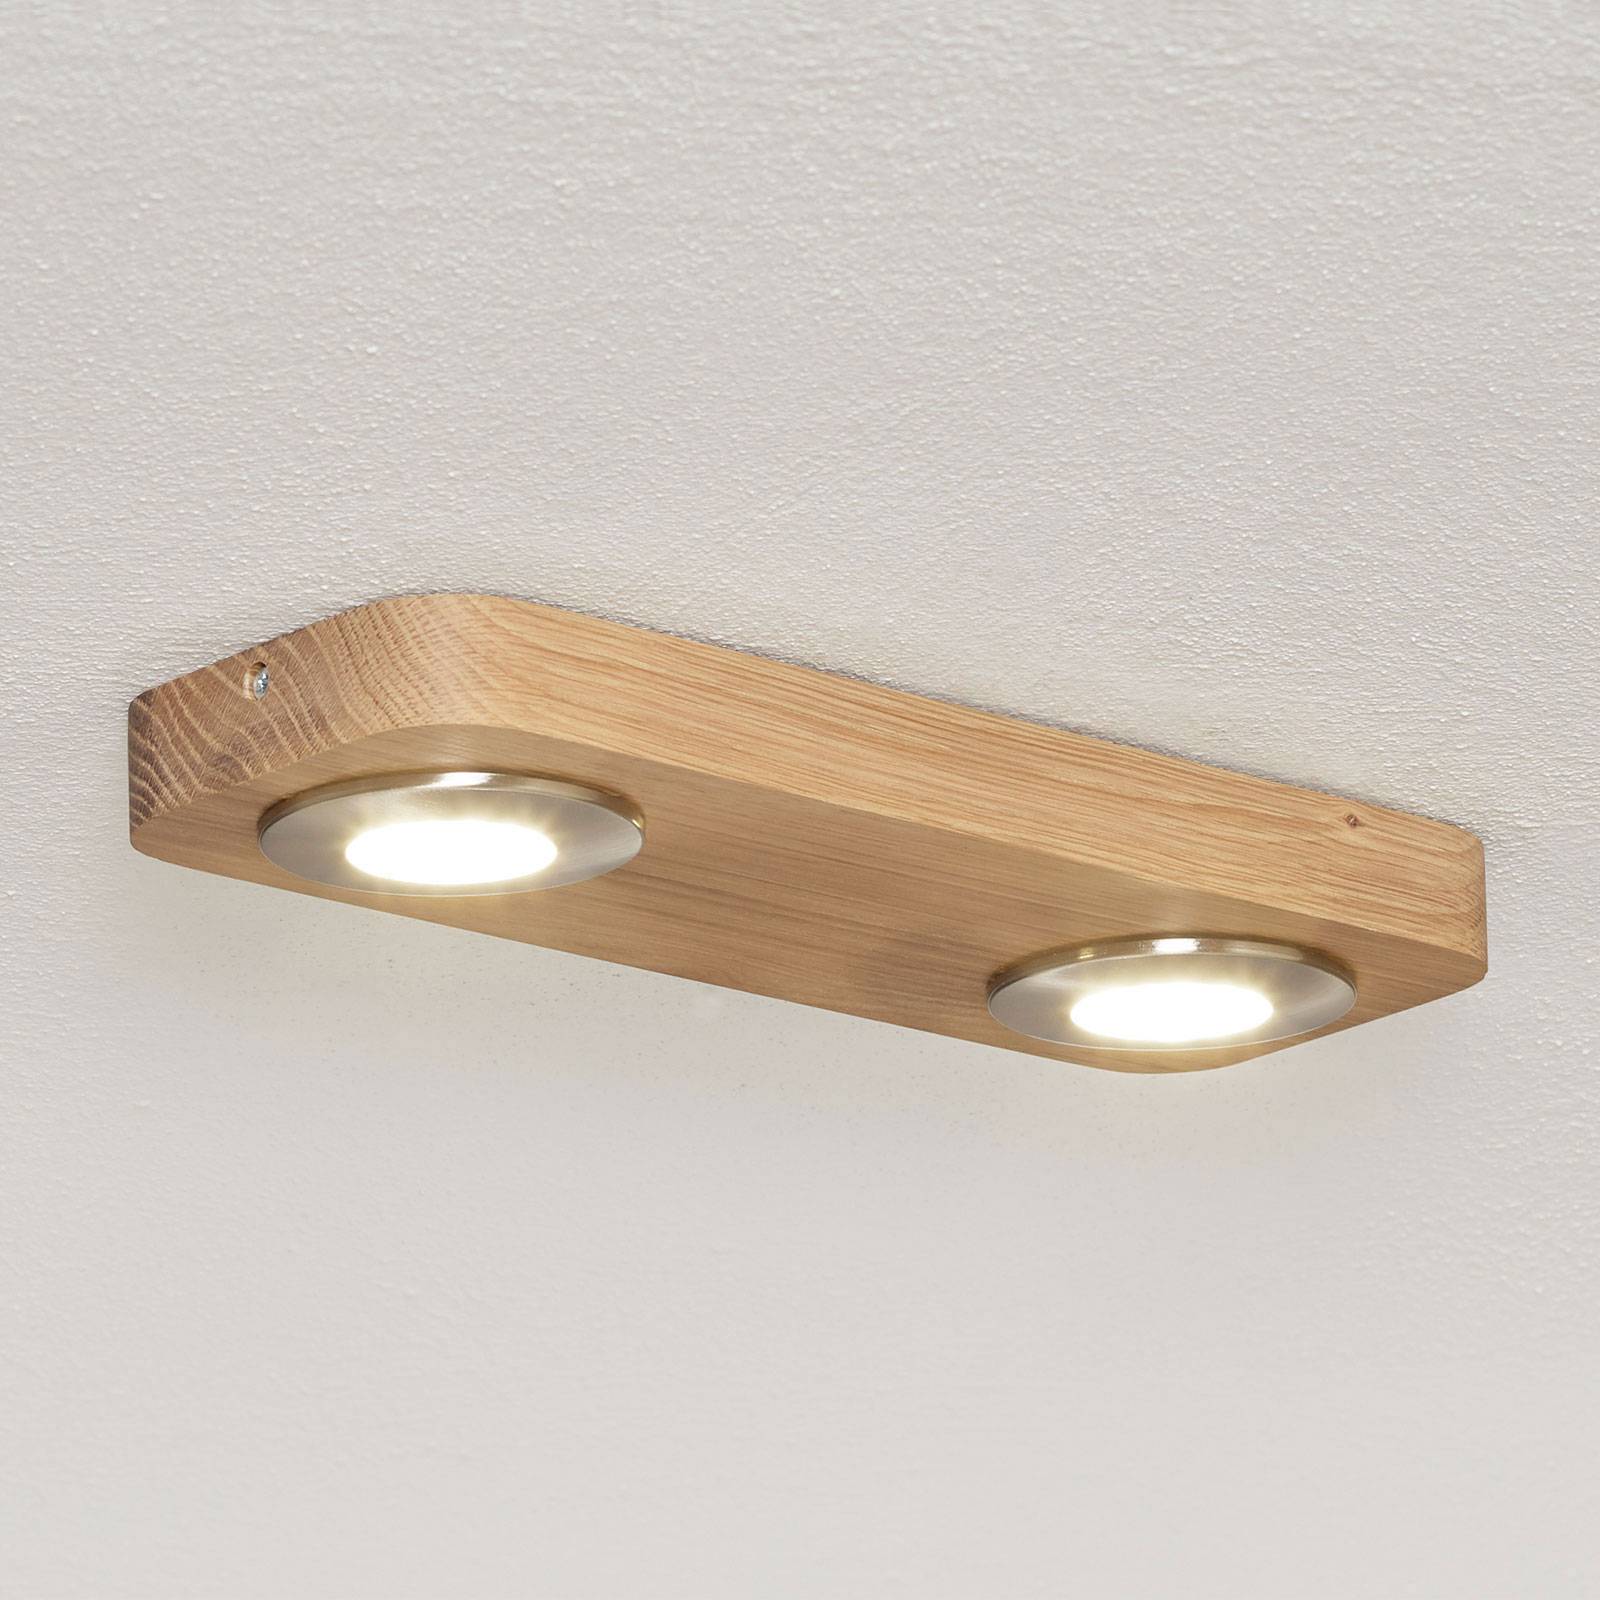 Spot-Light LED-Deckenlampe Sunniva in natürlichem Holz-Design